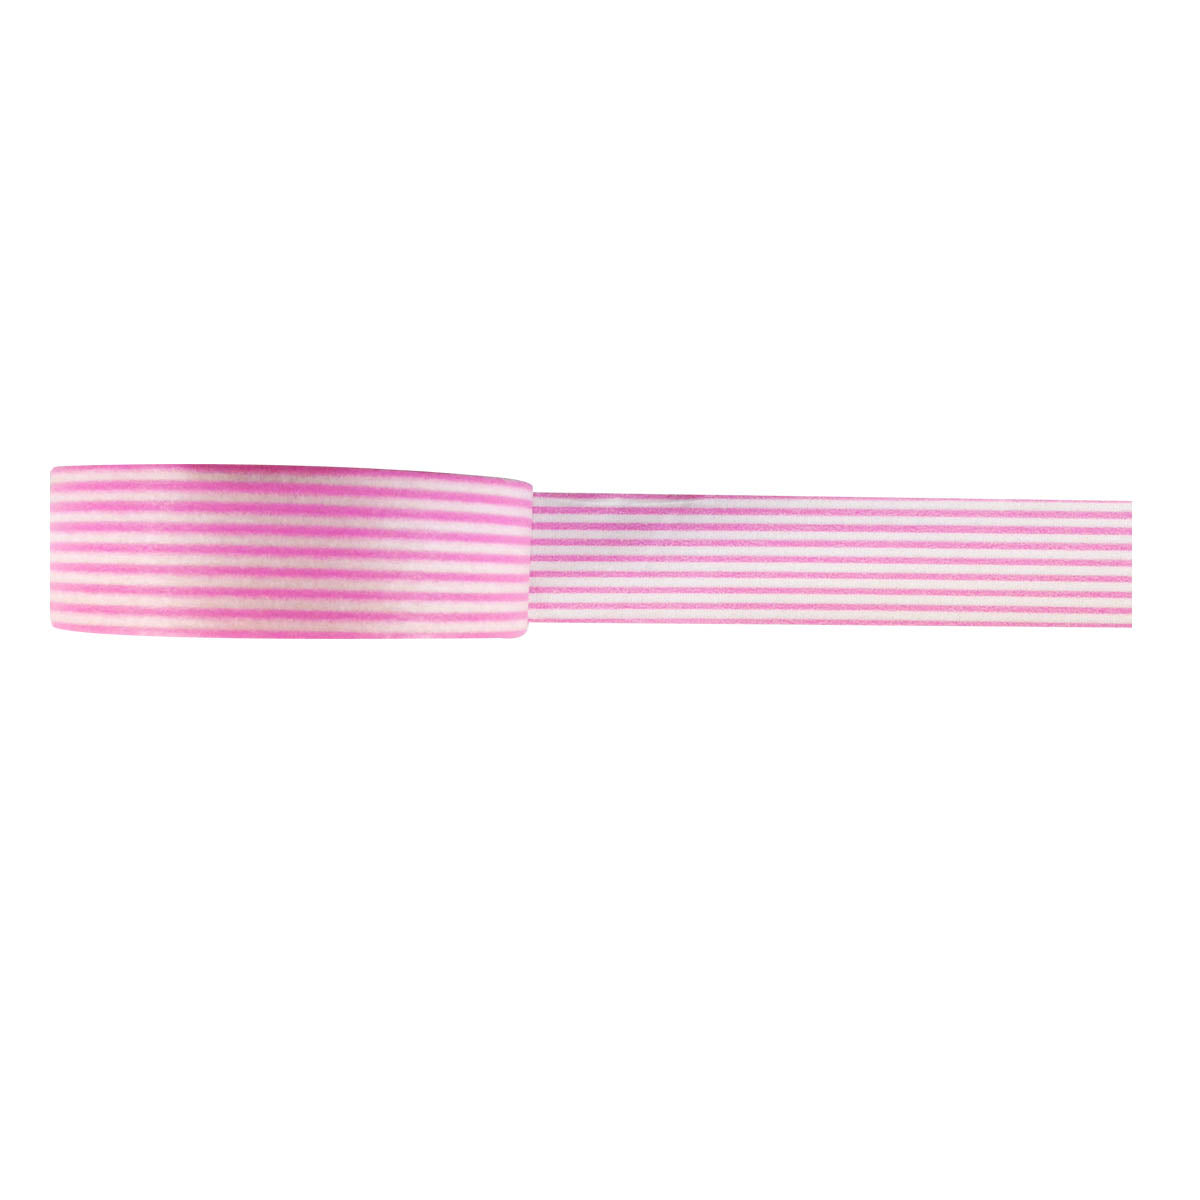 Wrapables Striped Japanese Washi Masking Tape